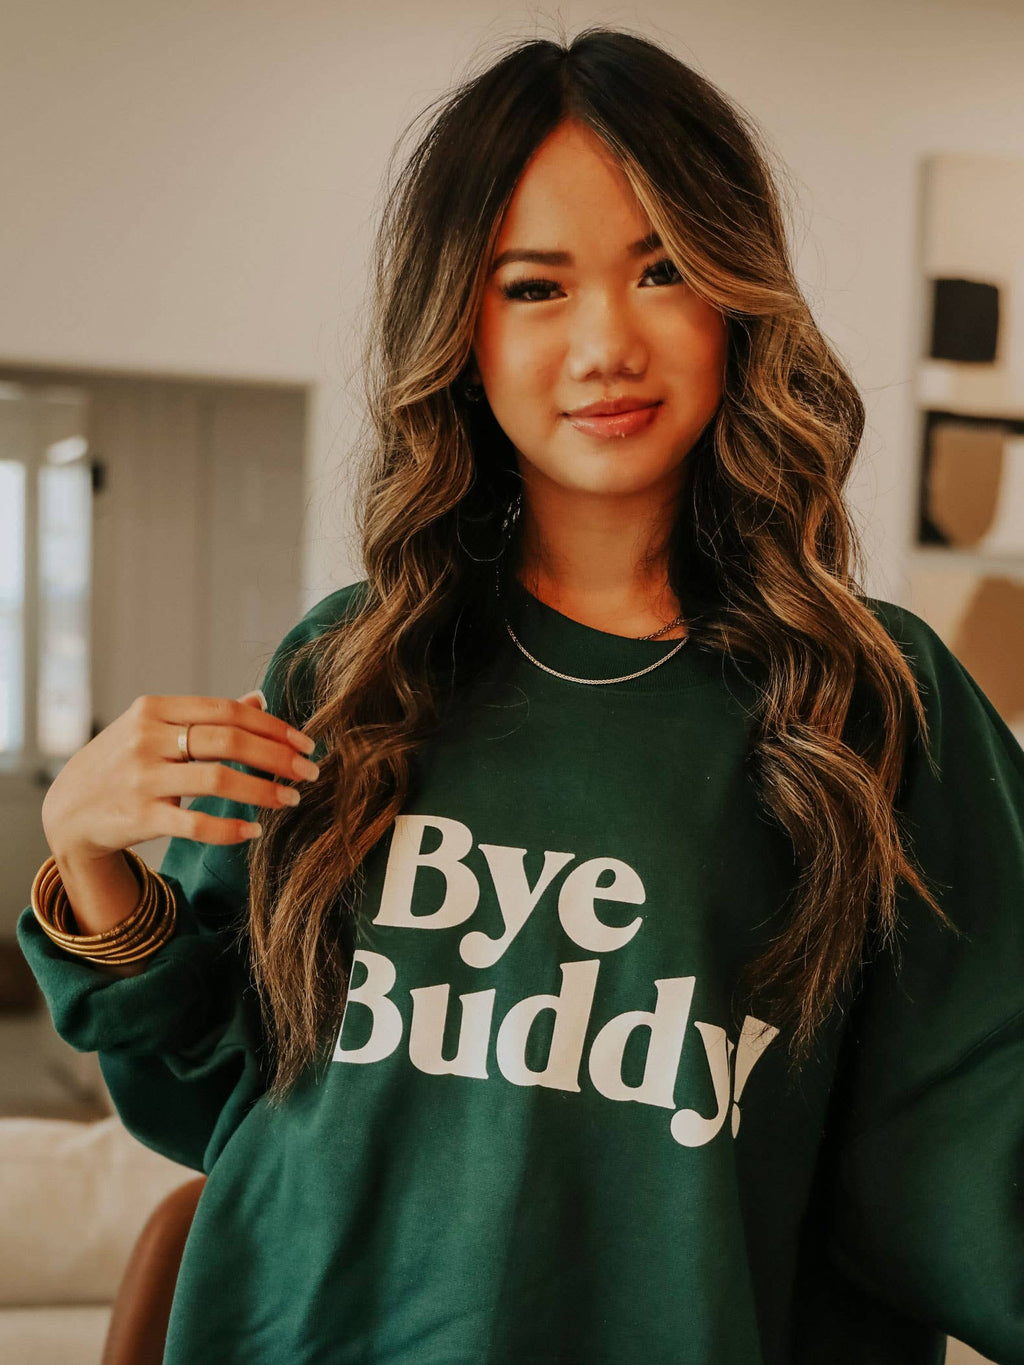 Bye Buddy! Sweatshirt